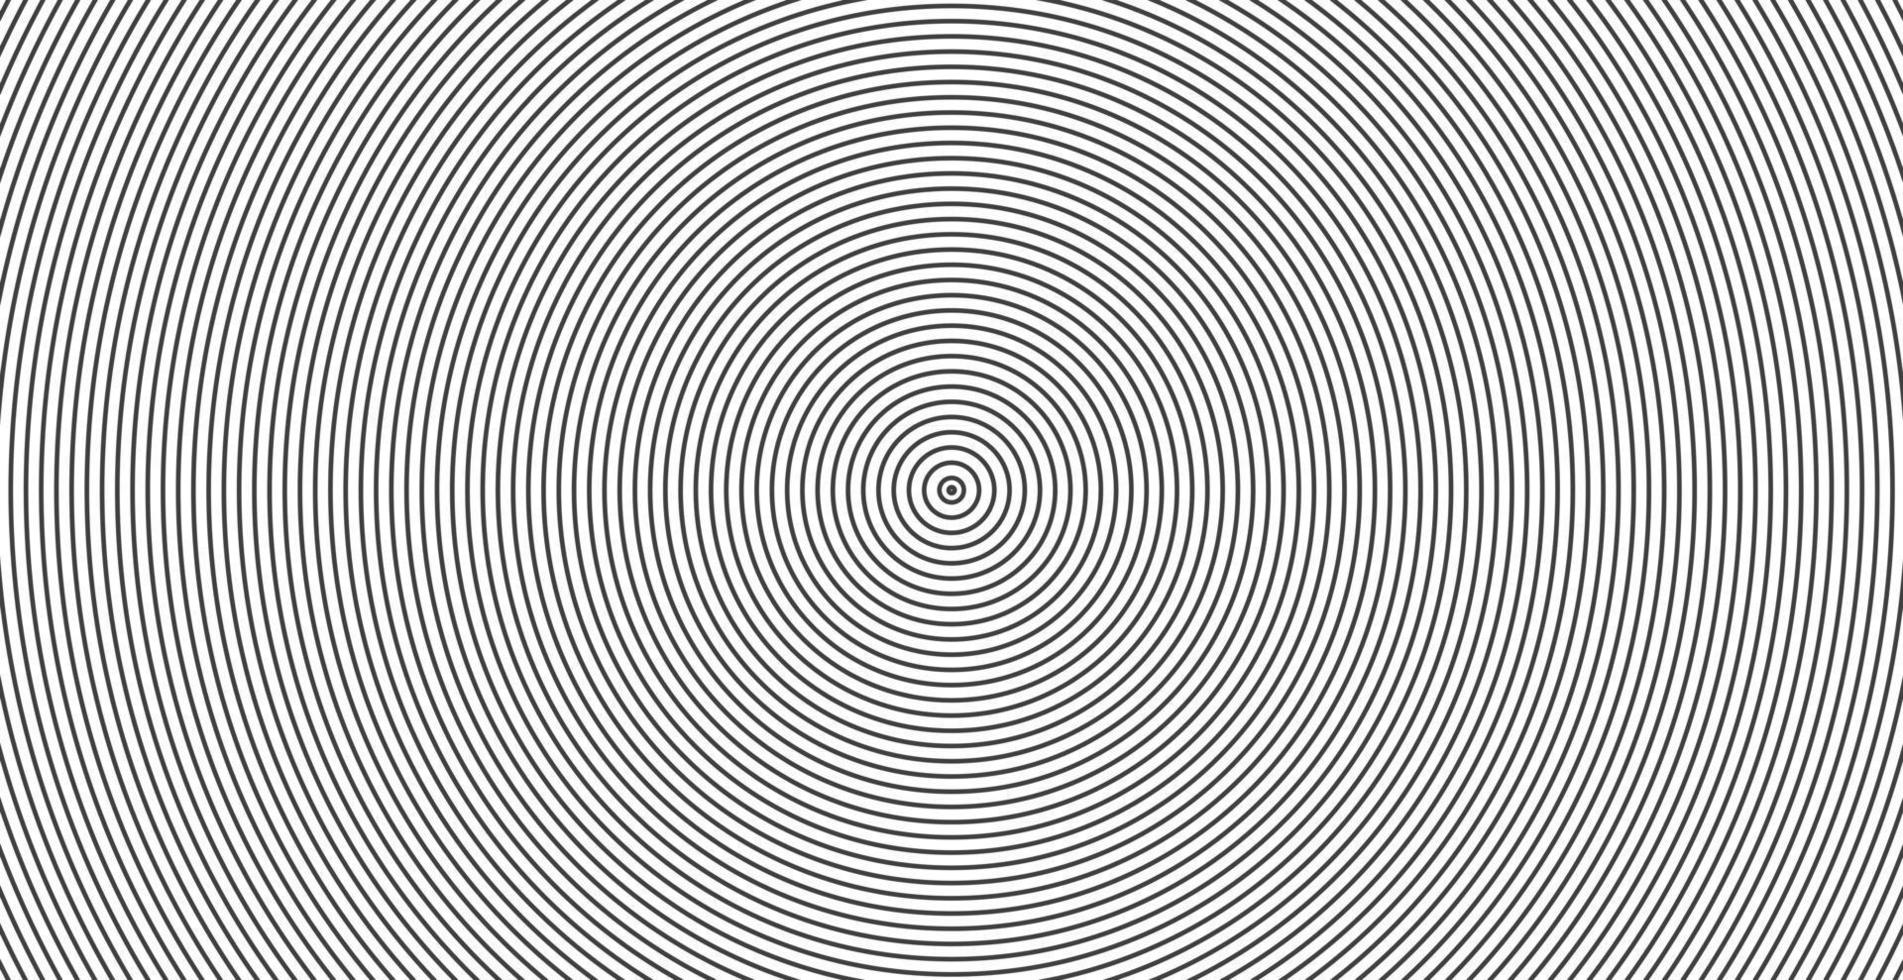 motif de ligne abstraite cercle concentrique onde sonore vecteur